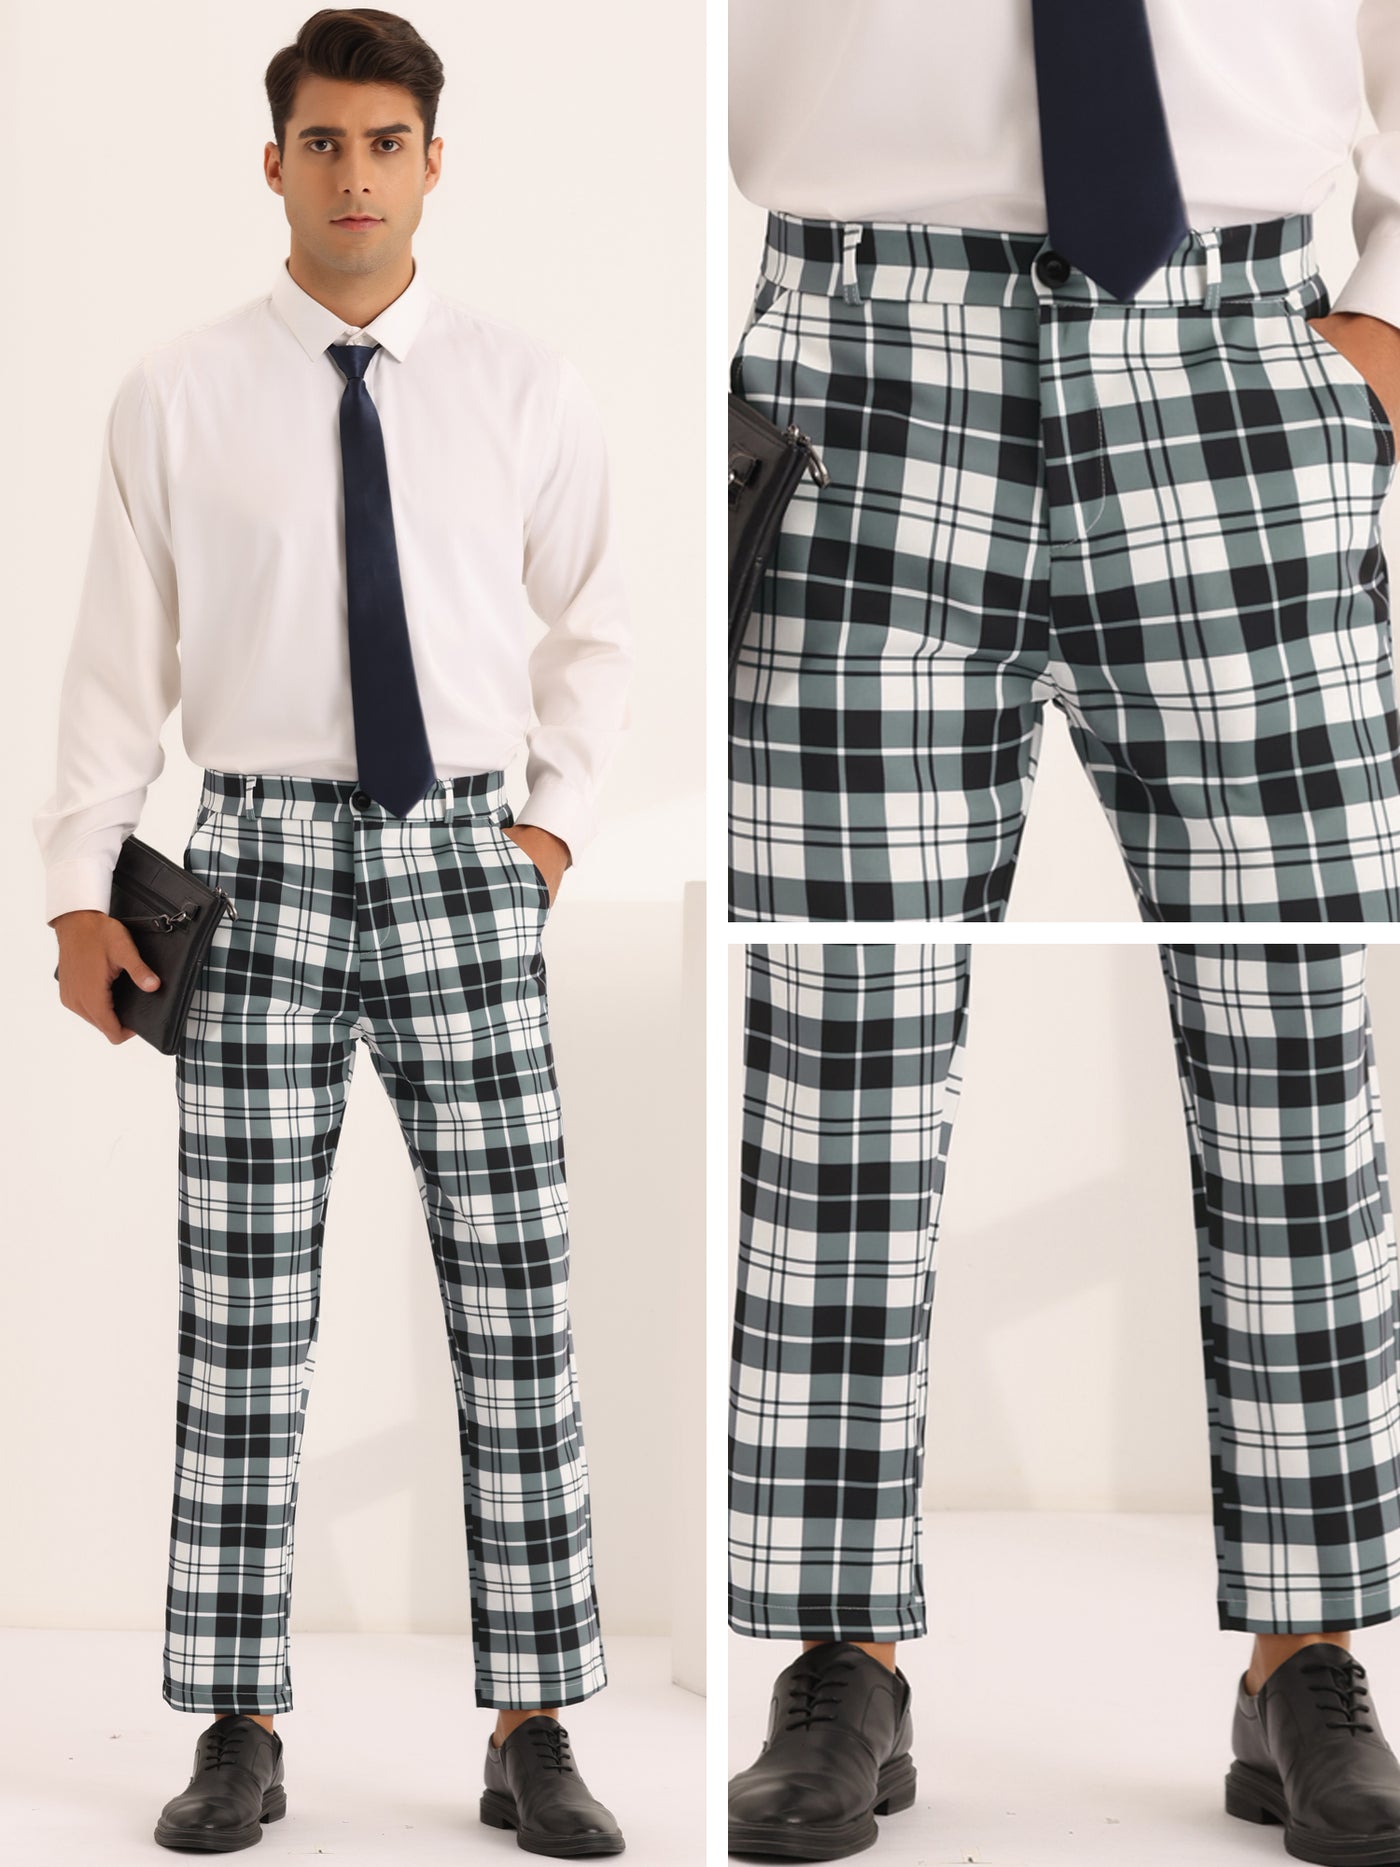 Bublédon Plaid Dress Pants for Men's Slim Fit Flat Front Business Checked Suit Trousers